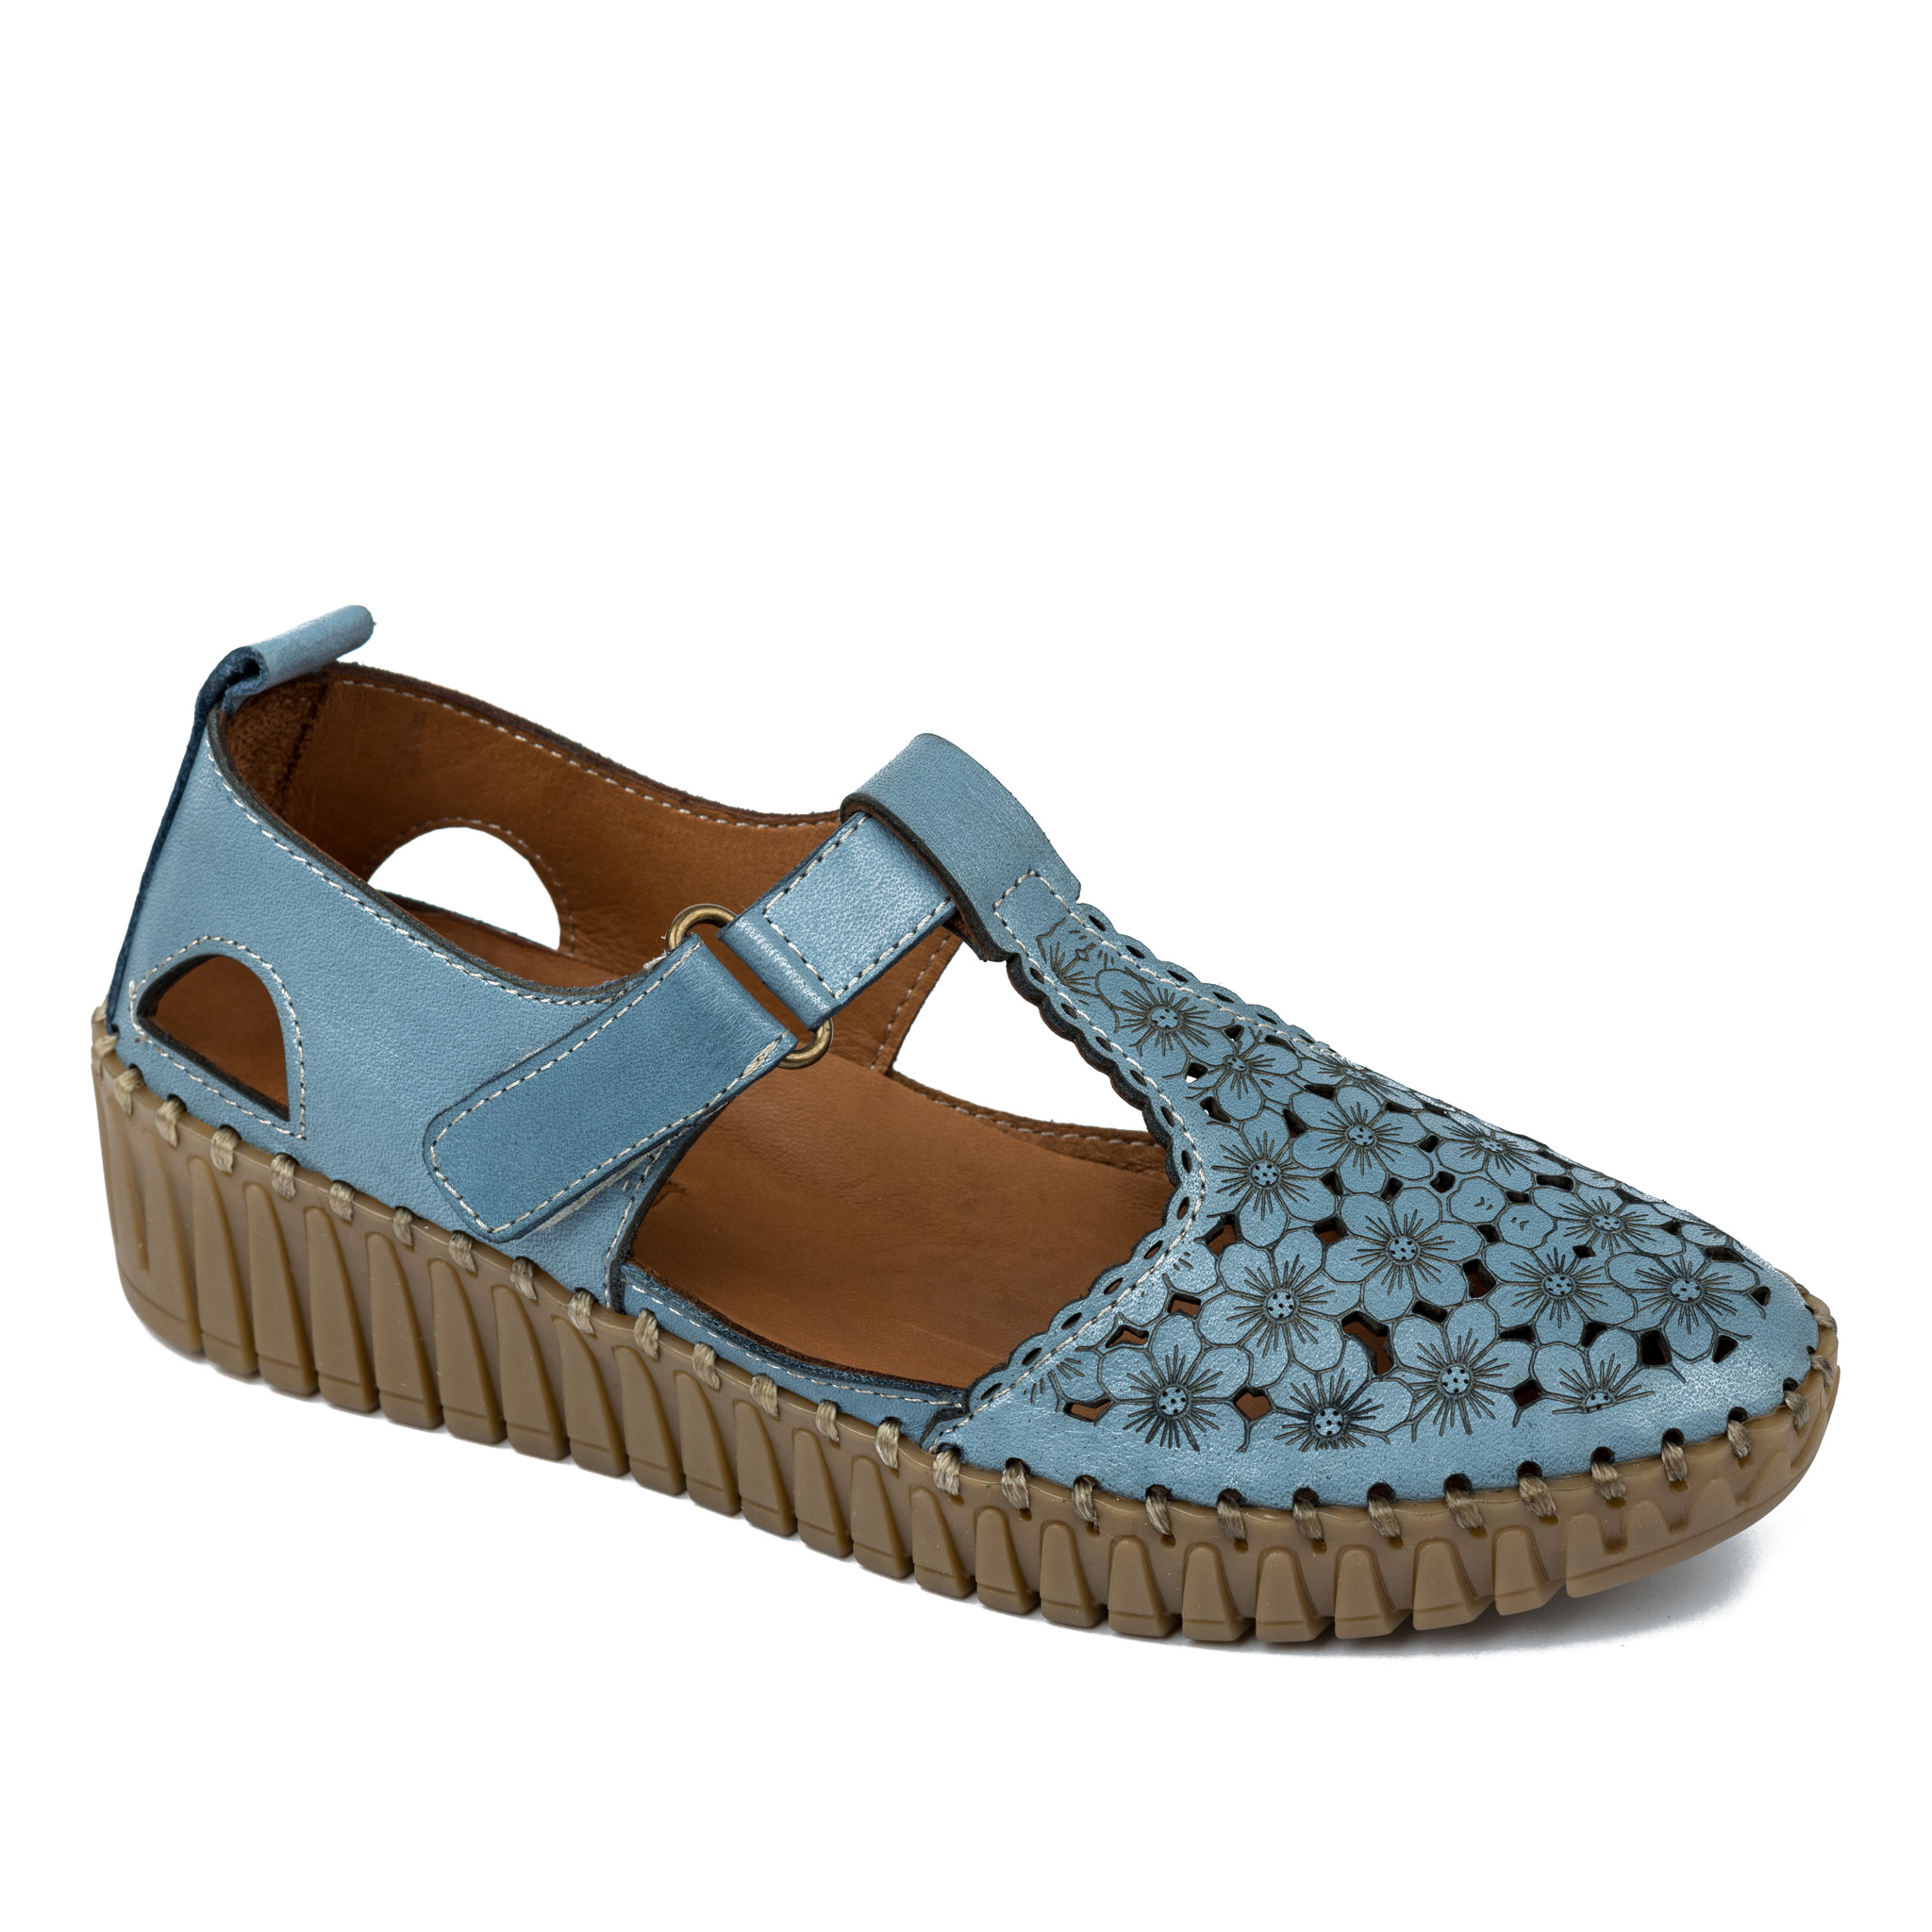 Women sandals A348 - BLUE